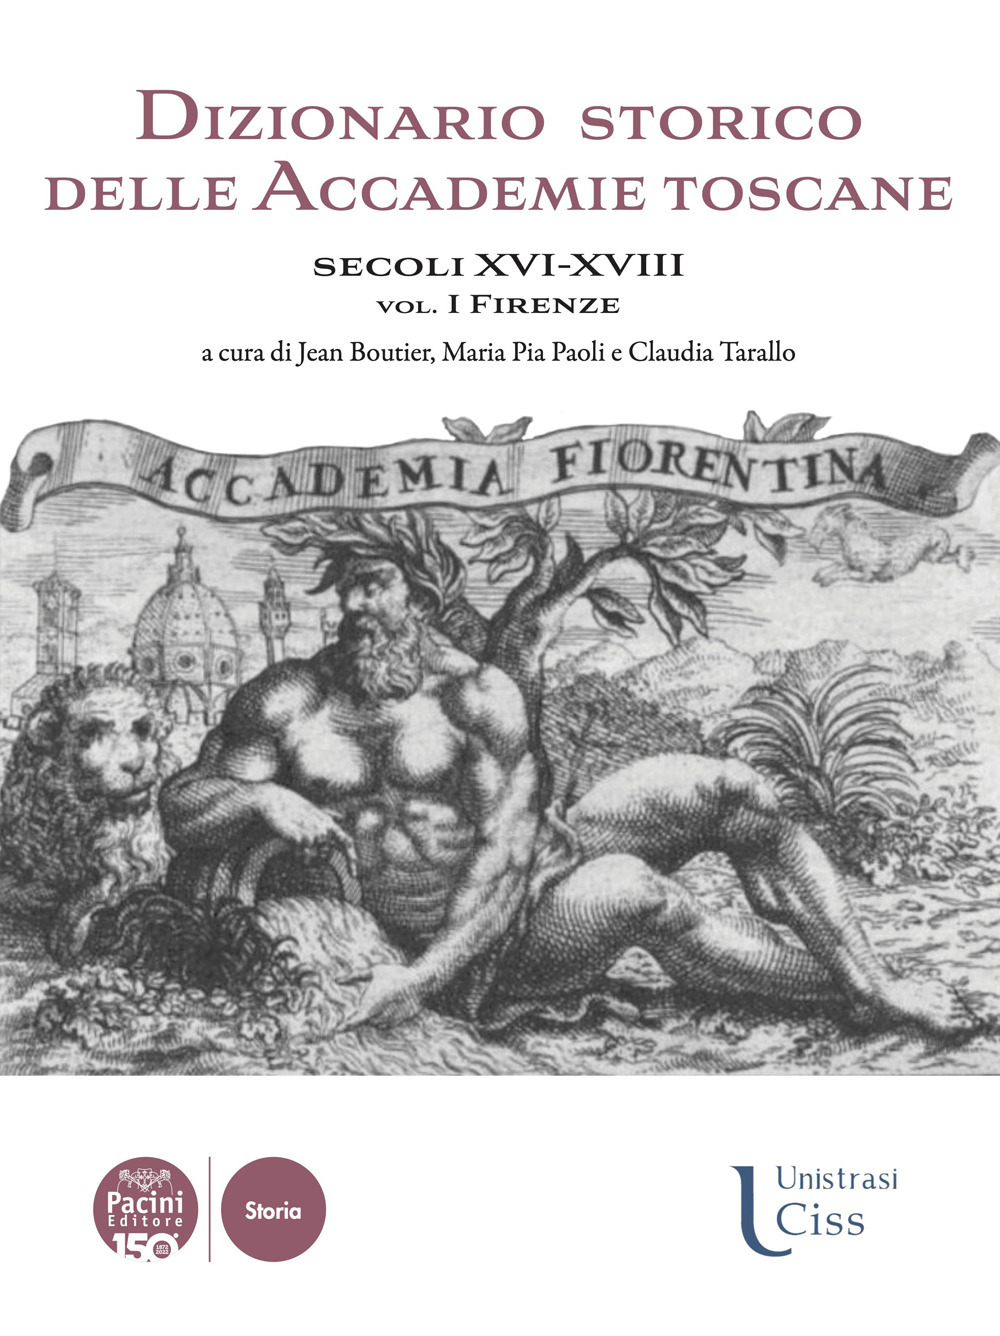 Dizionario storico delle accademie toscane. Secoli XVI-XVIII. Vol. 1: Firenze